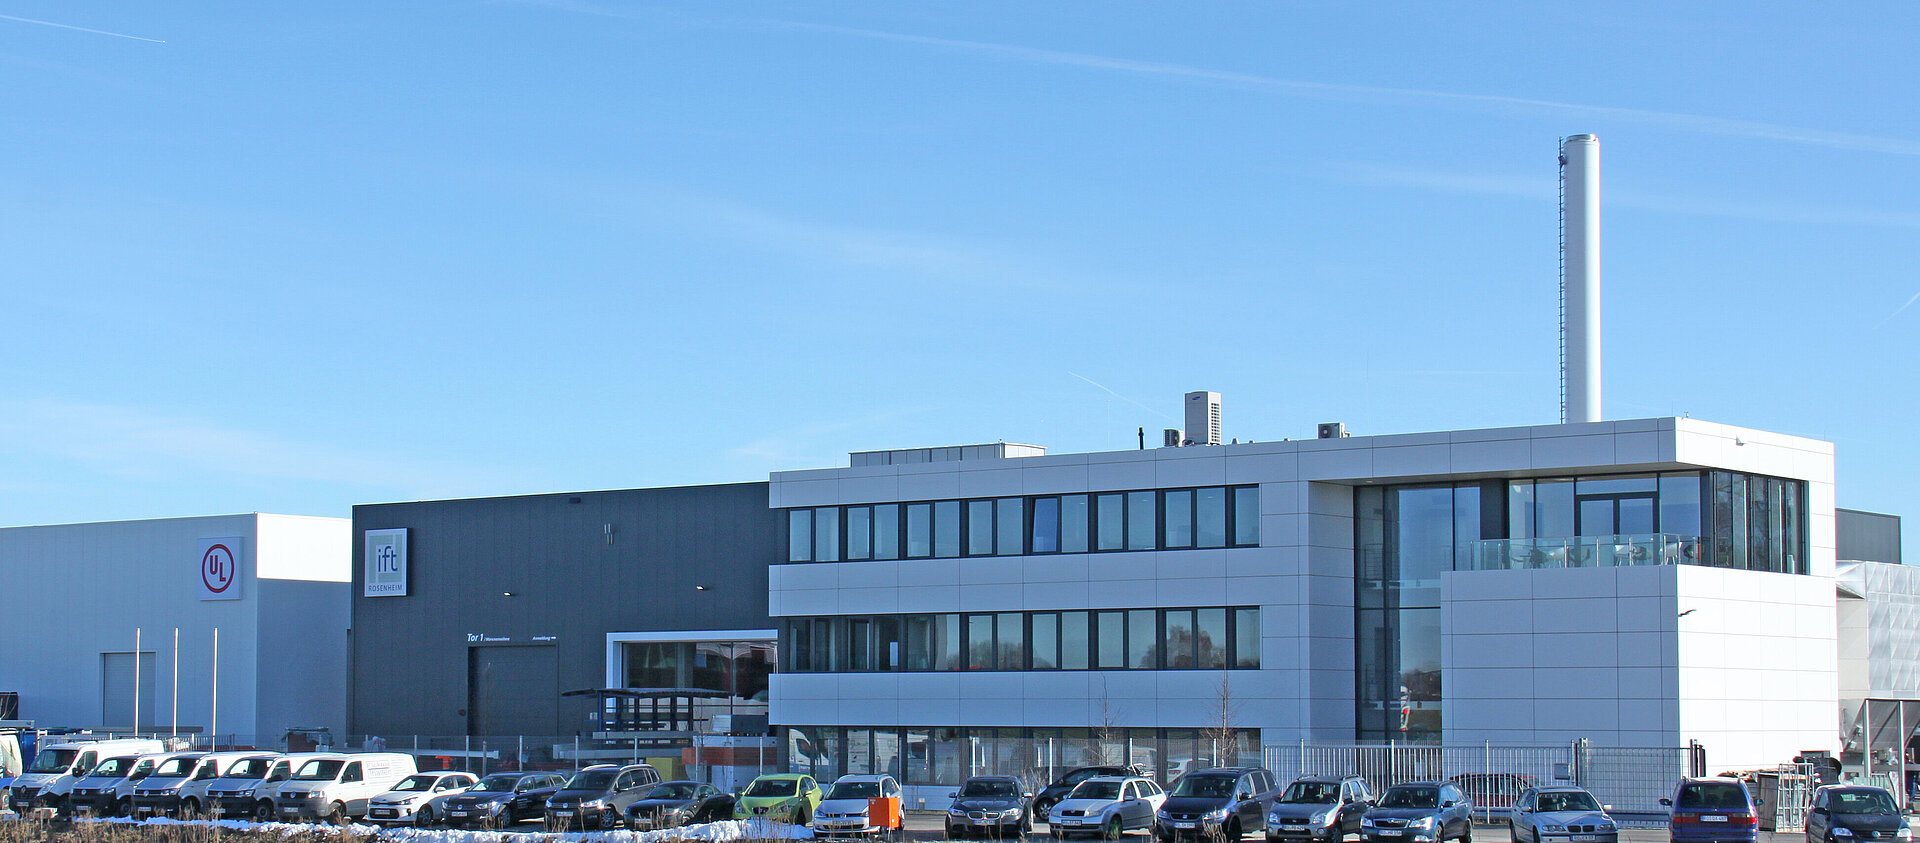 Das Bild zeigt ein Industriegebäude vor blauem Himmel. Es handelt sich um das ift-Technologiezentrum